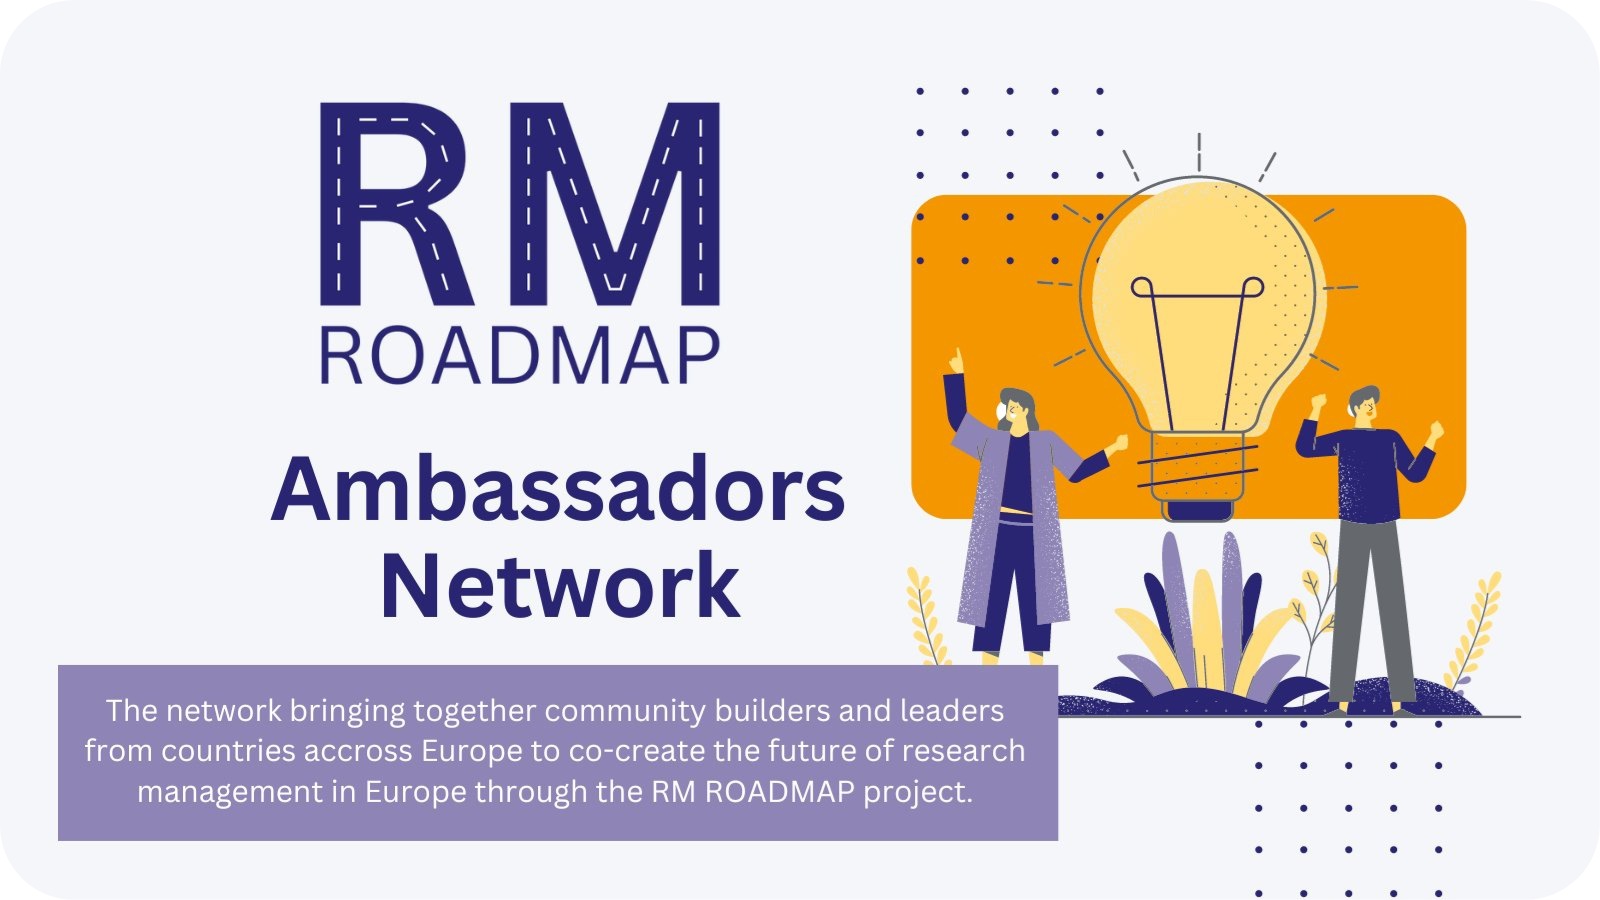 RM Roadmap ambassadors